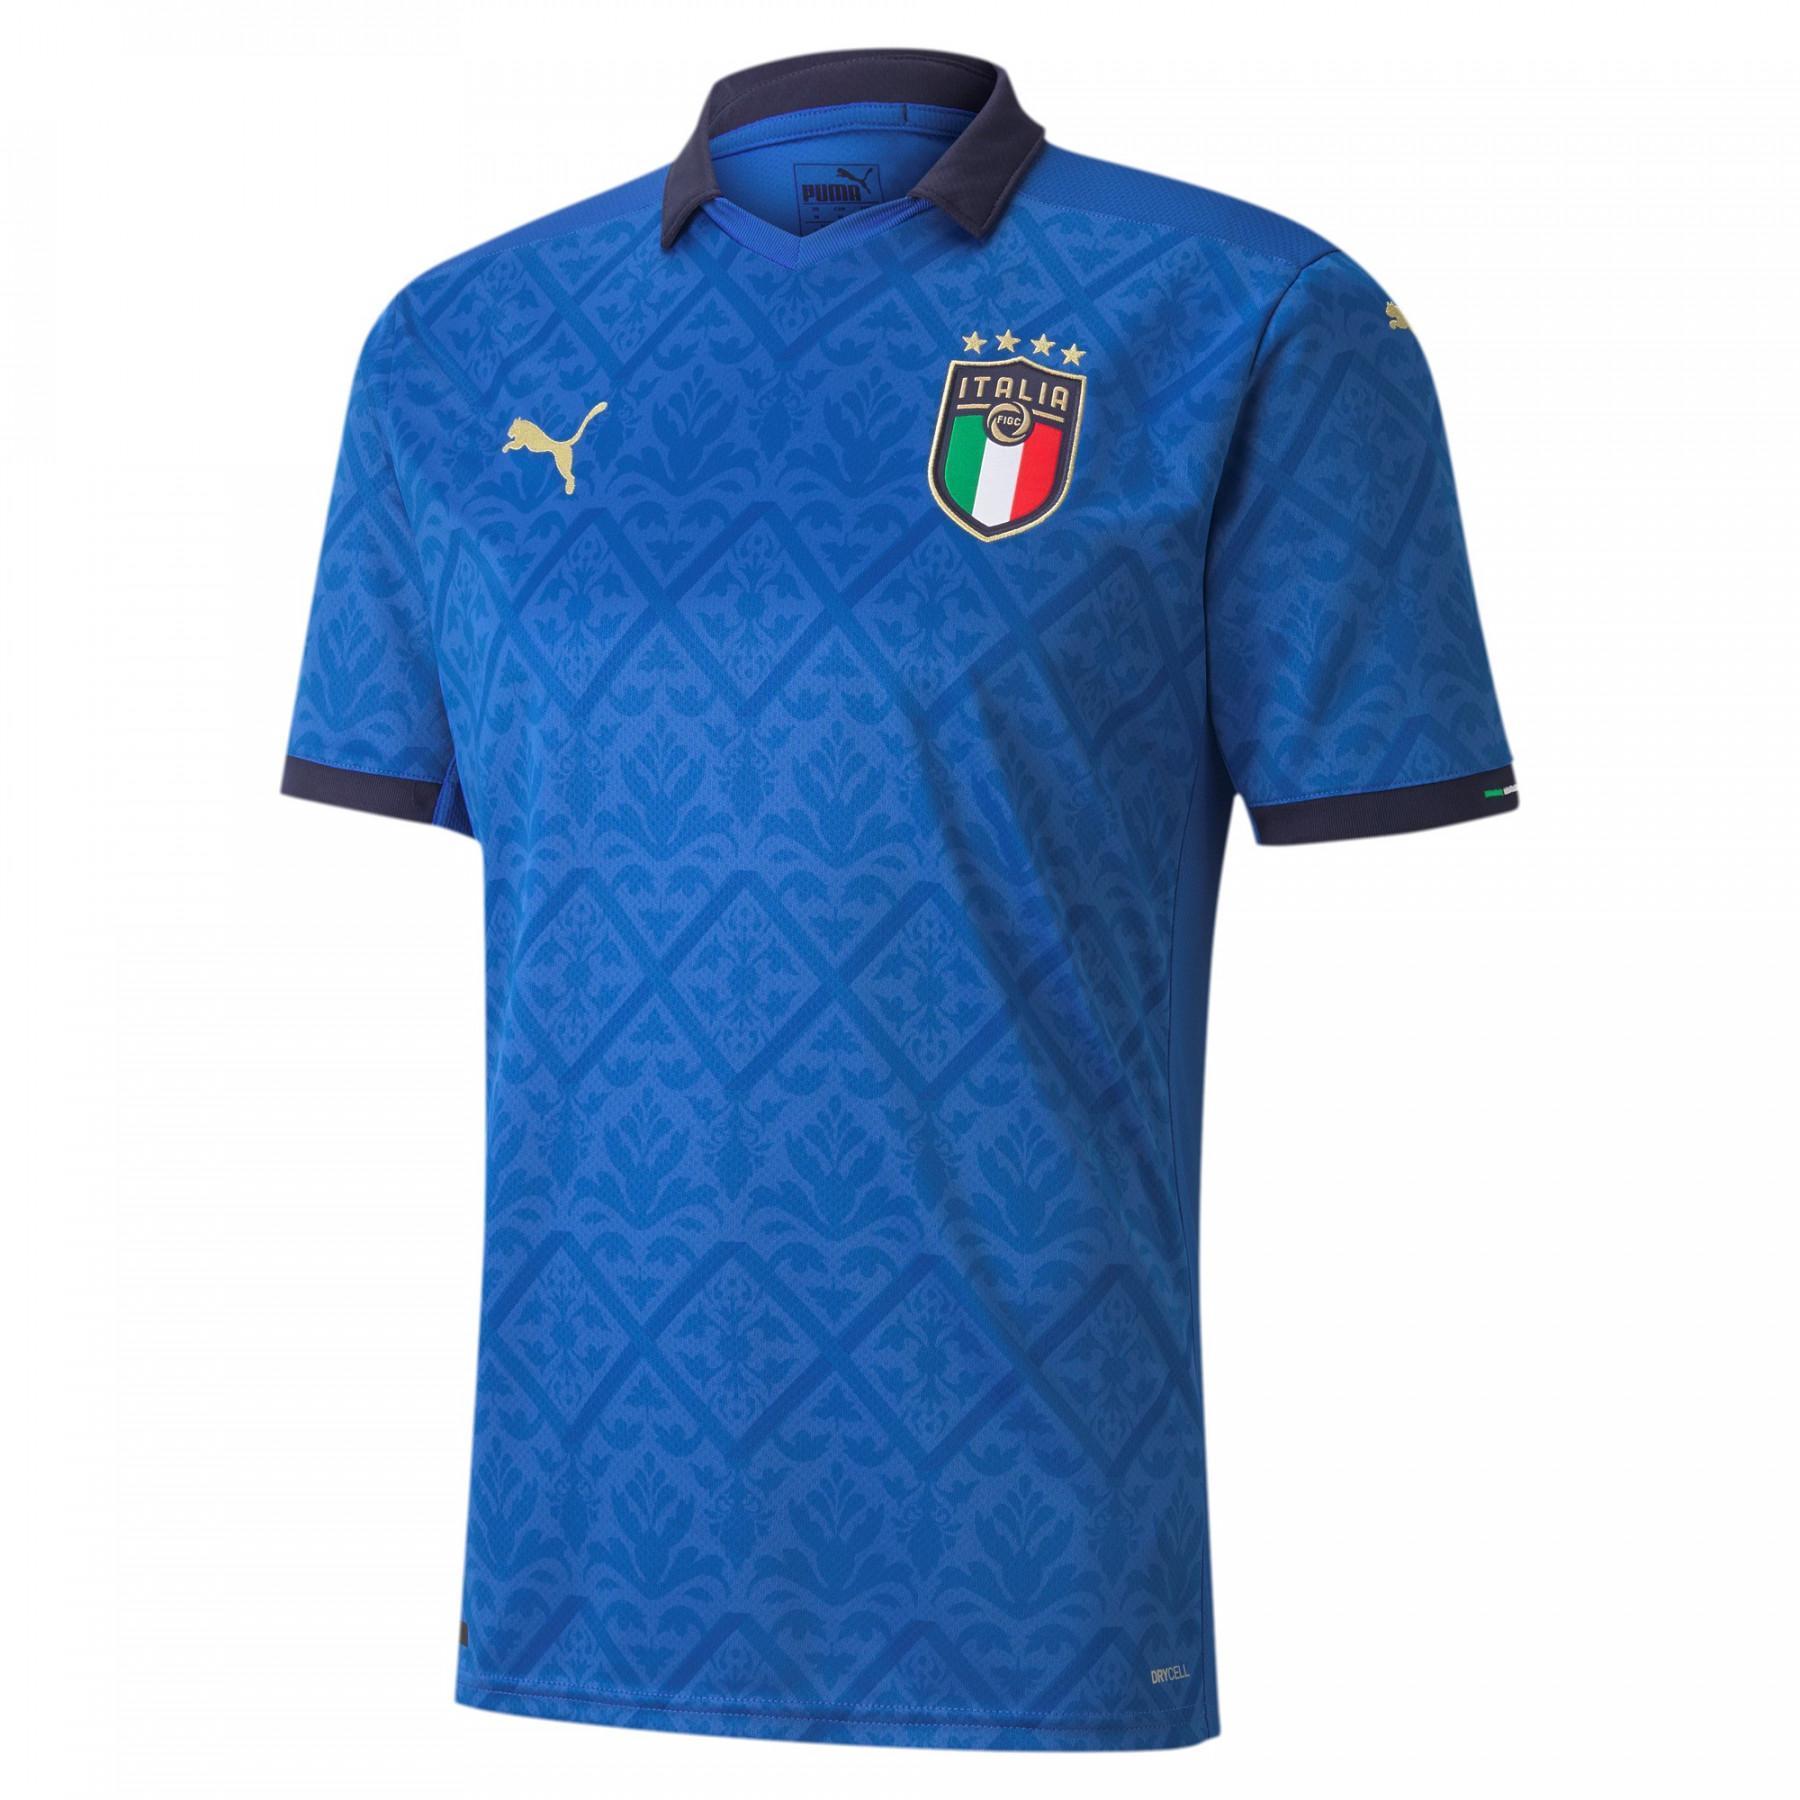 Camiseta primera equipación Italie 2020